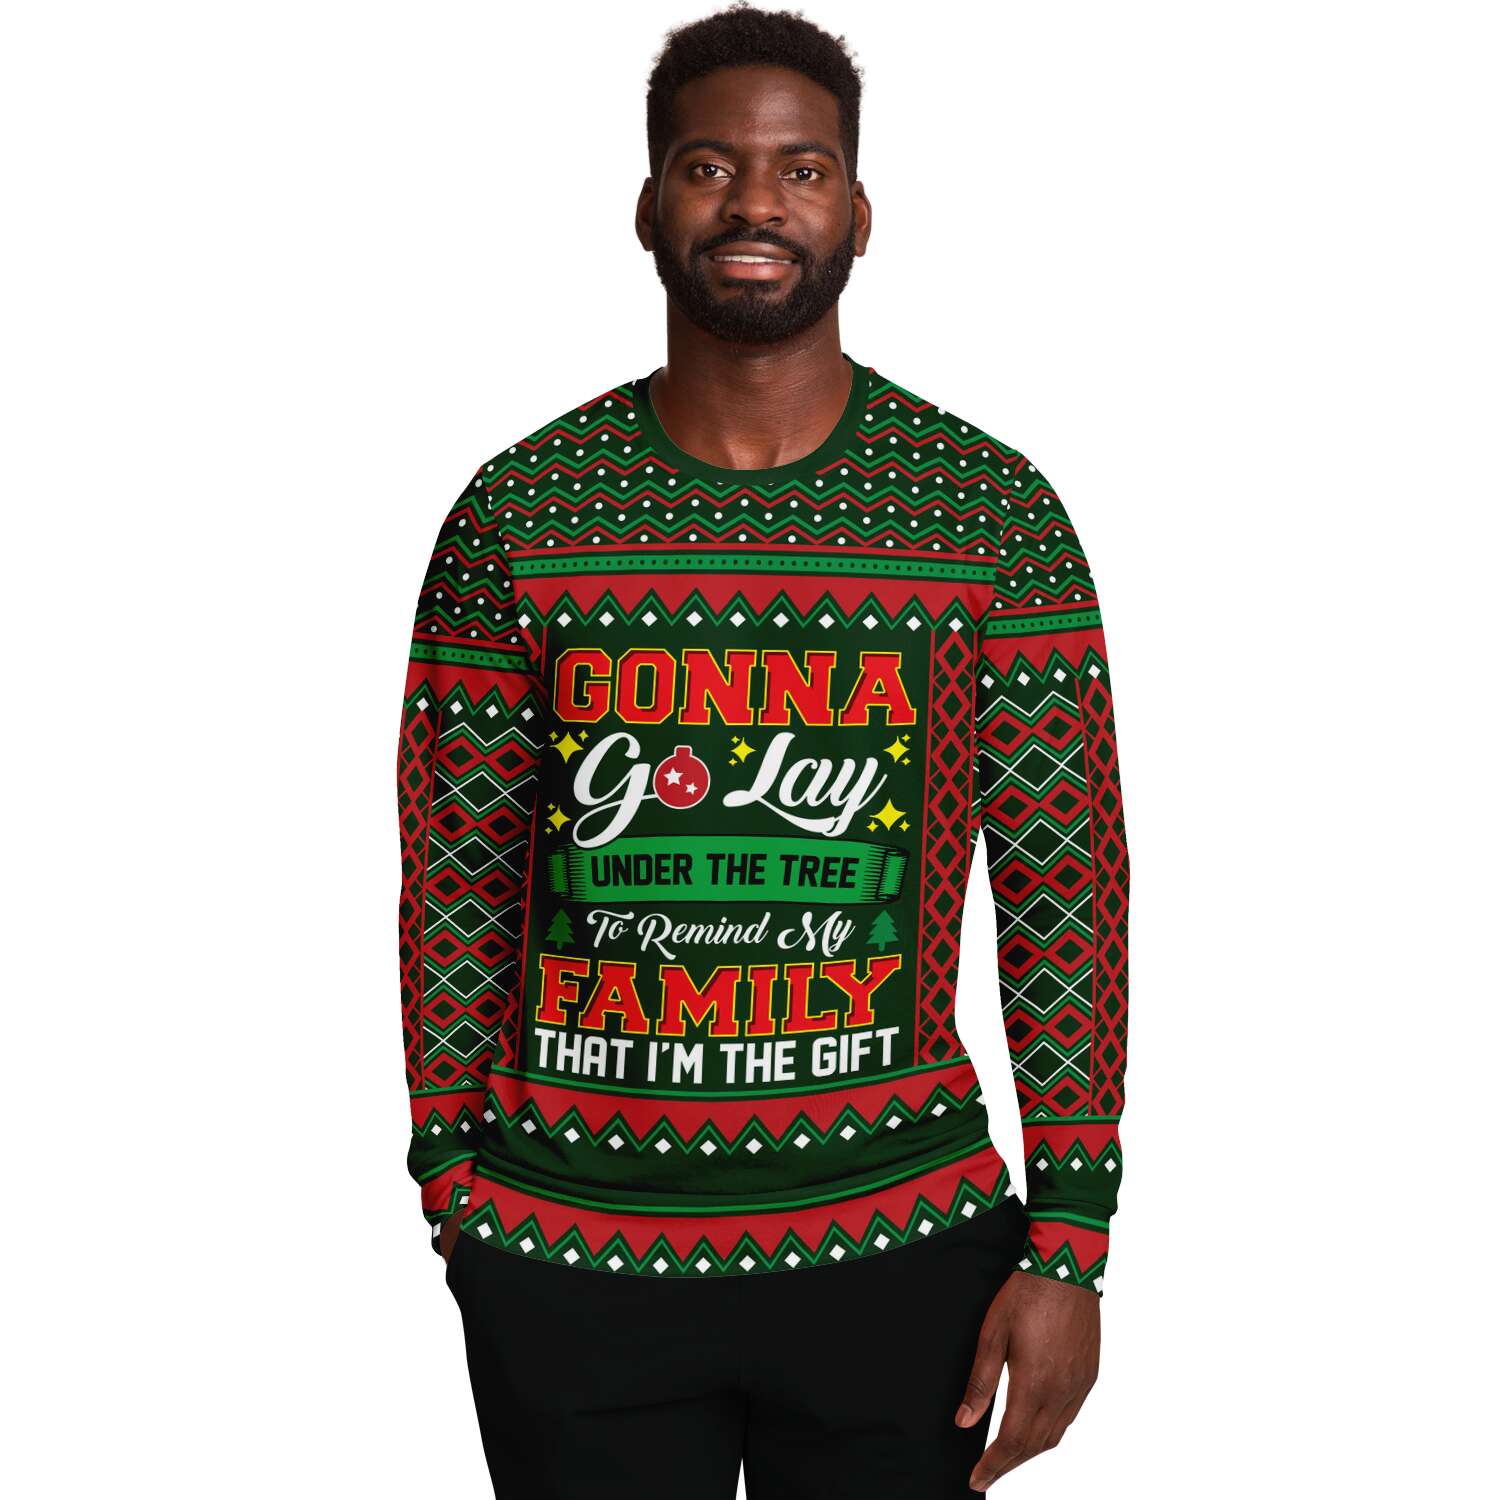 I Am The Gift Sweatshirt | Unisex Ugly Christmas Sweater, Xmas Sweater, Holiday Sweater, Festive Sweater, Funny Sweater, Funny Party Shirt